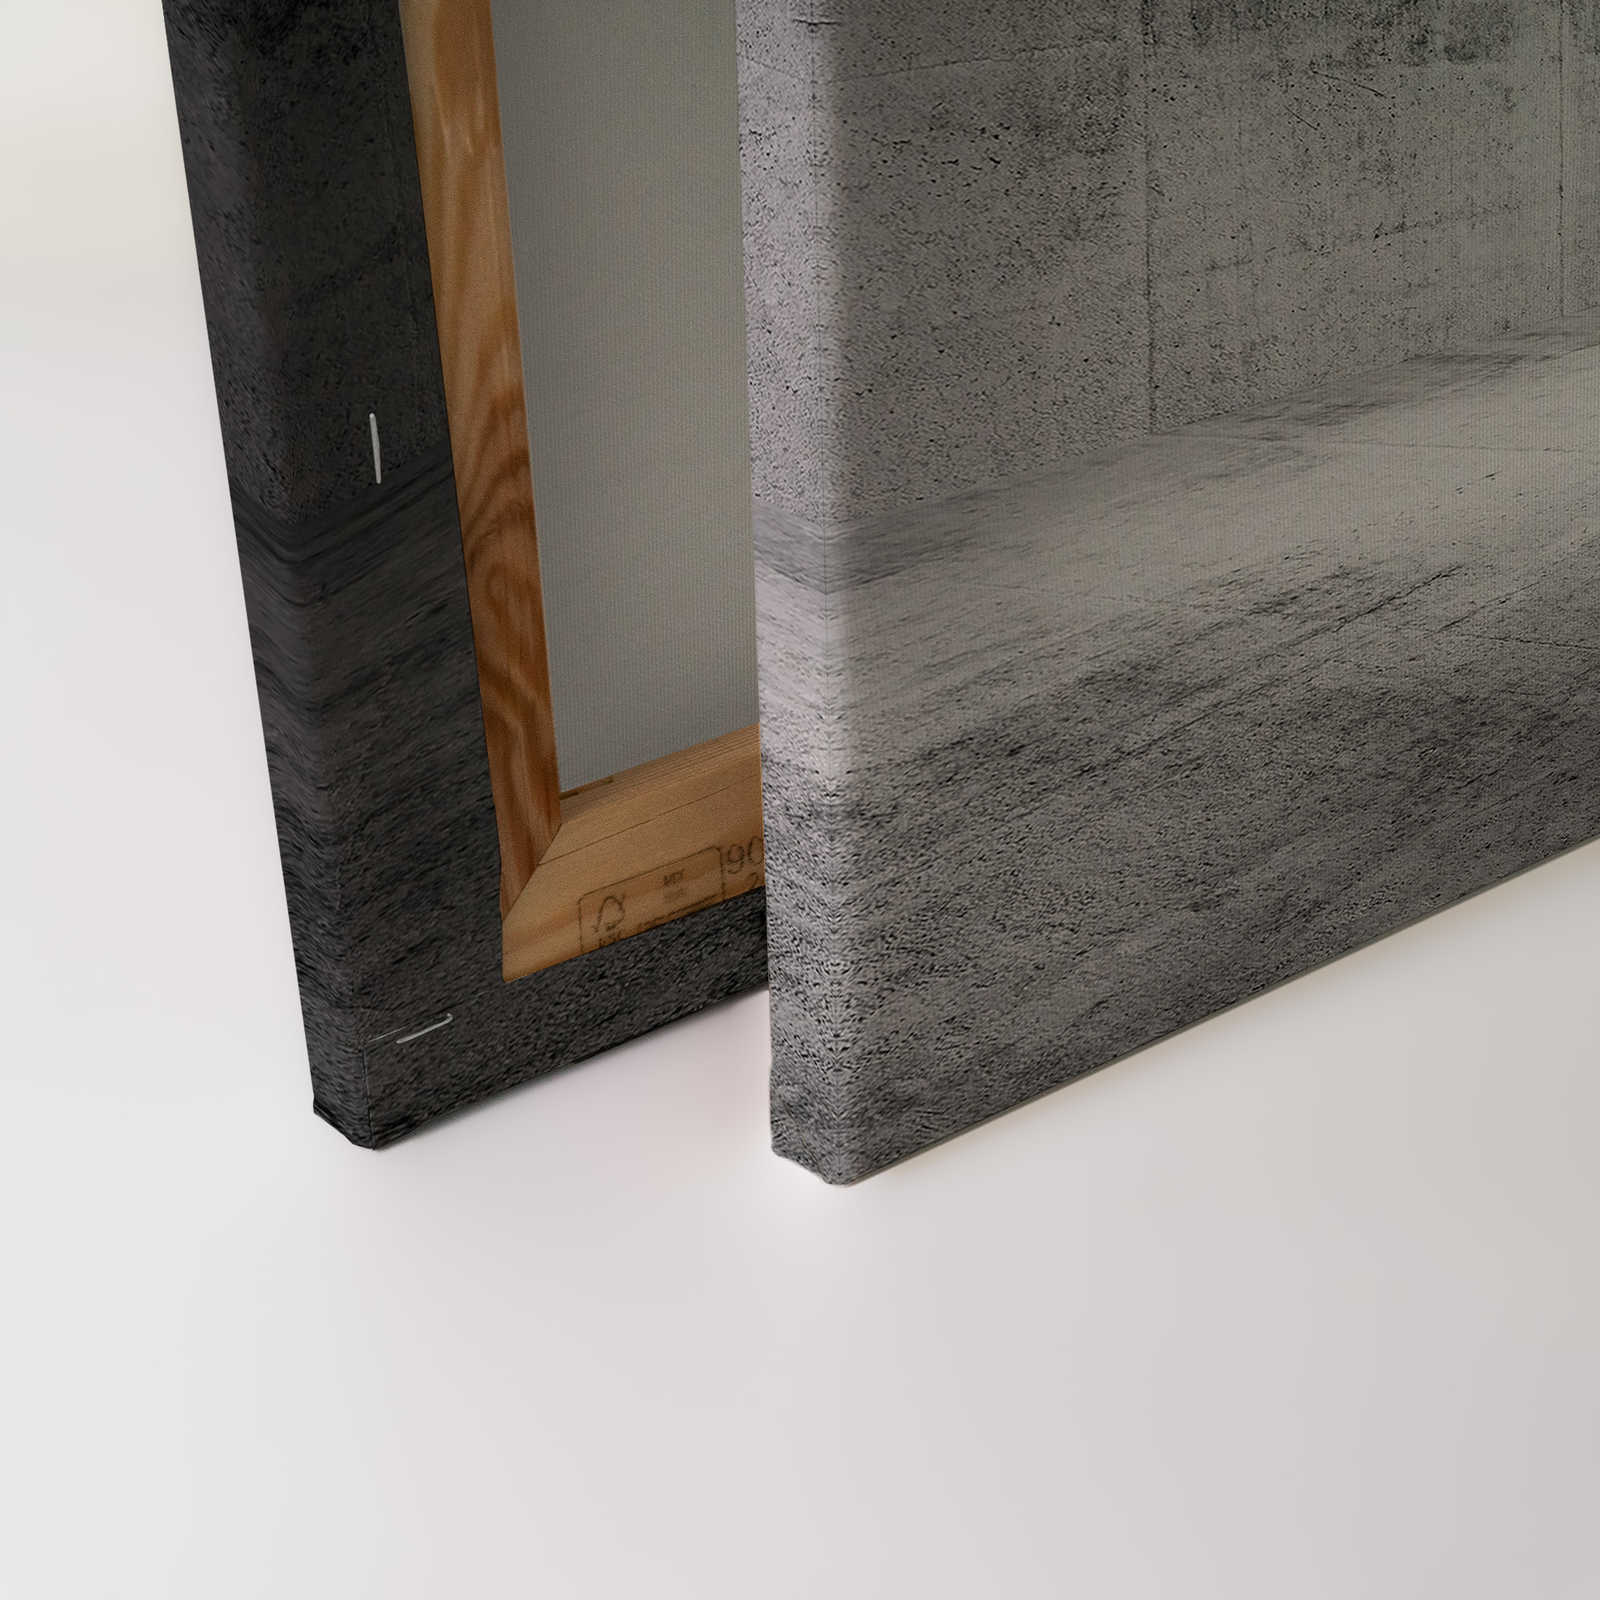             Pittura su tela Stanza di cemento con effetto 3D - 0,90 m x 0,60 m
        